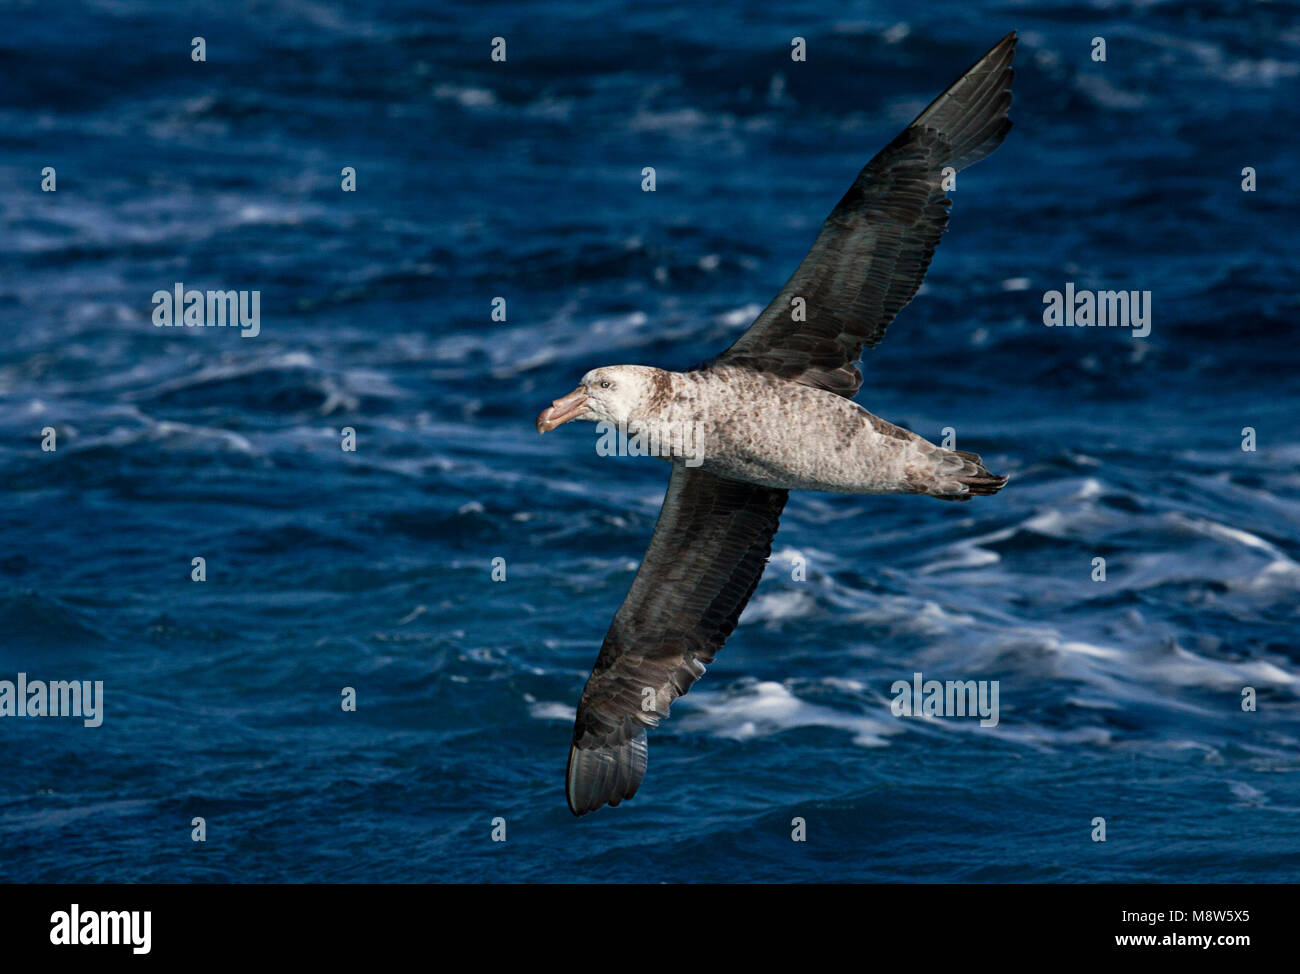 Noordelijke Reuzenstormvogel vliegend; Hall's Giant Petrel fliegen Stockfoto